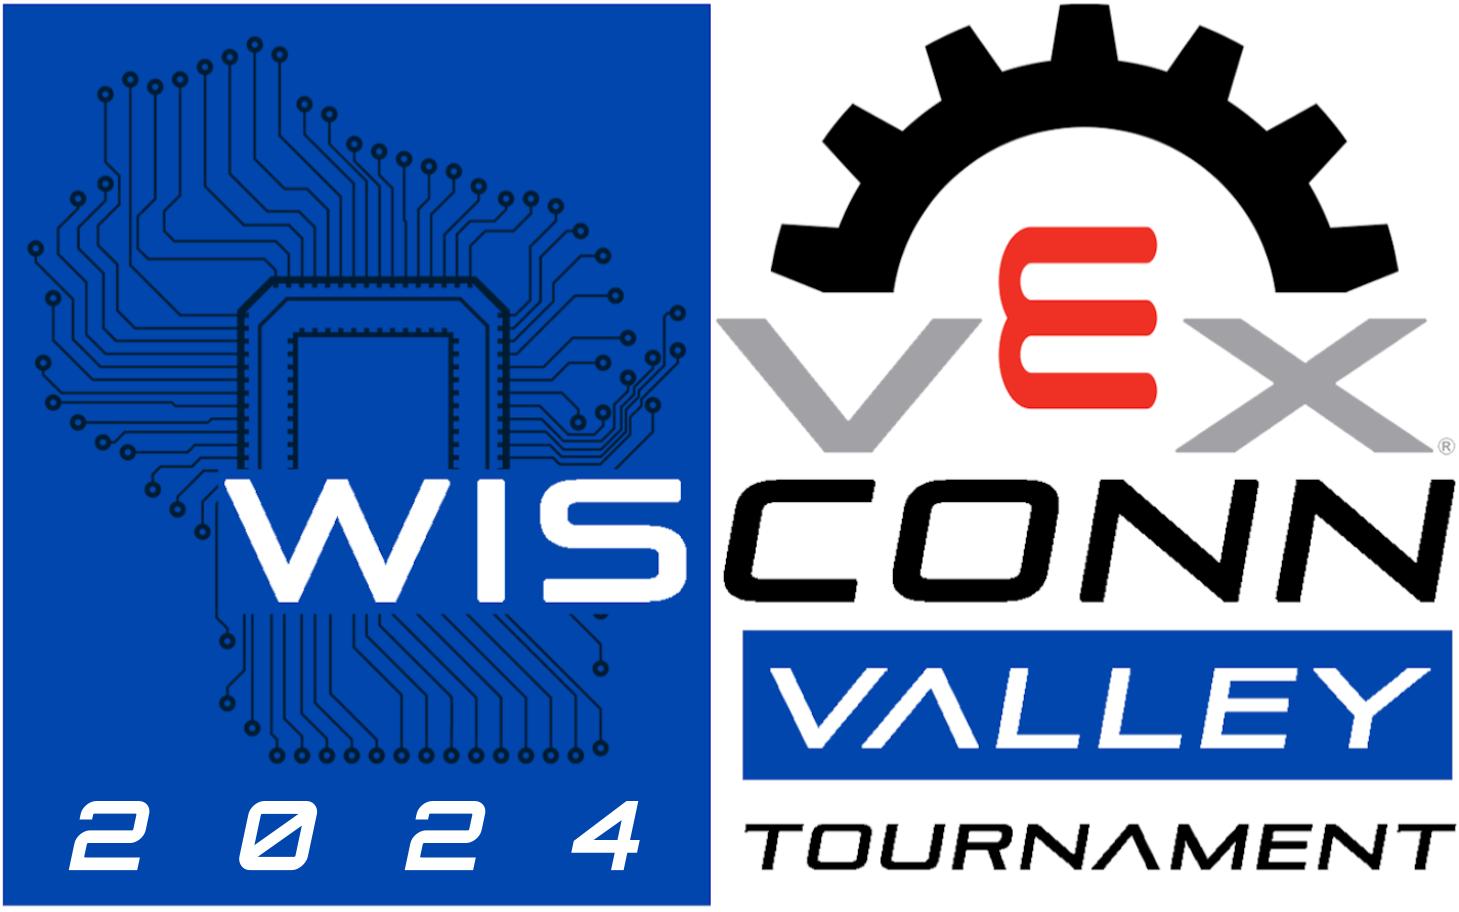 Wisconn Valley VIQRC Tournament